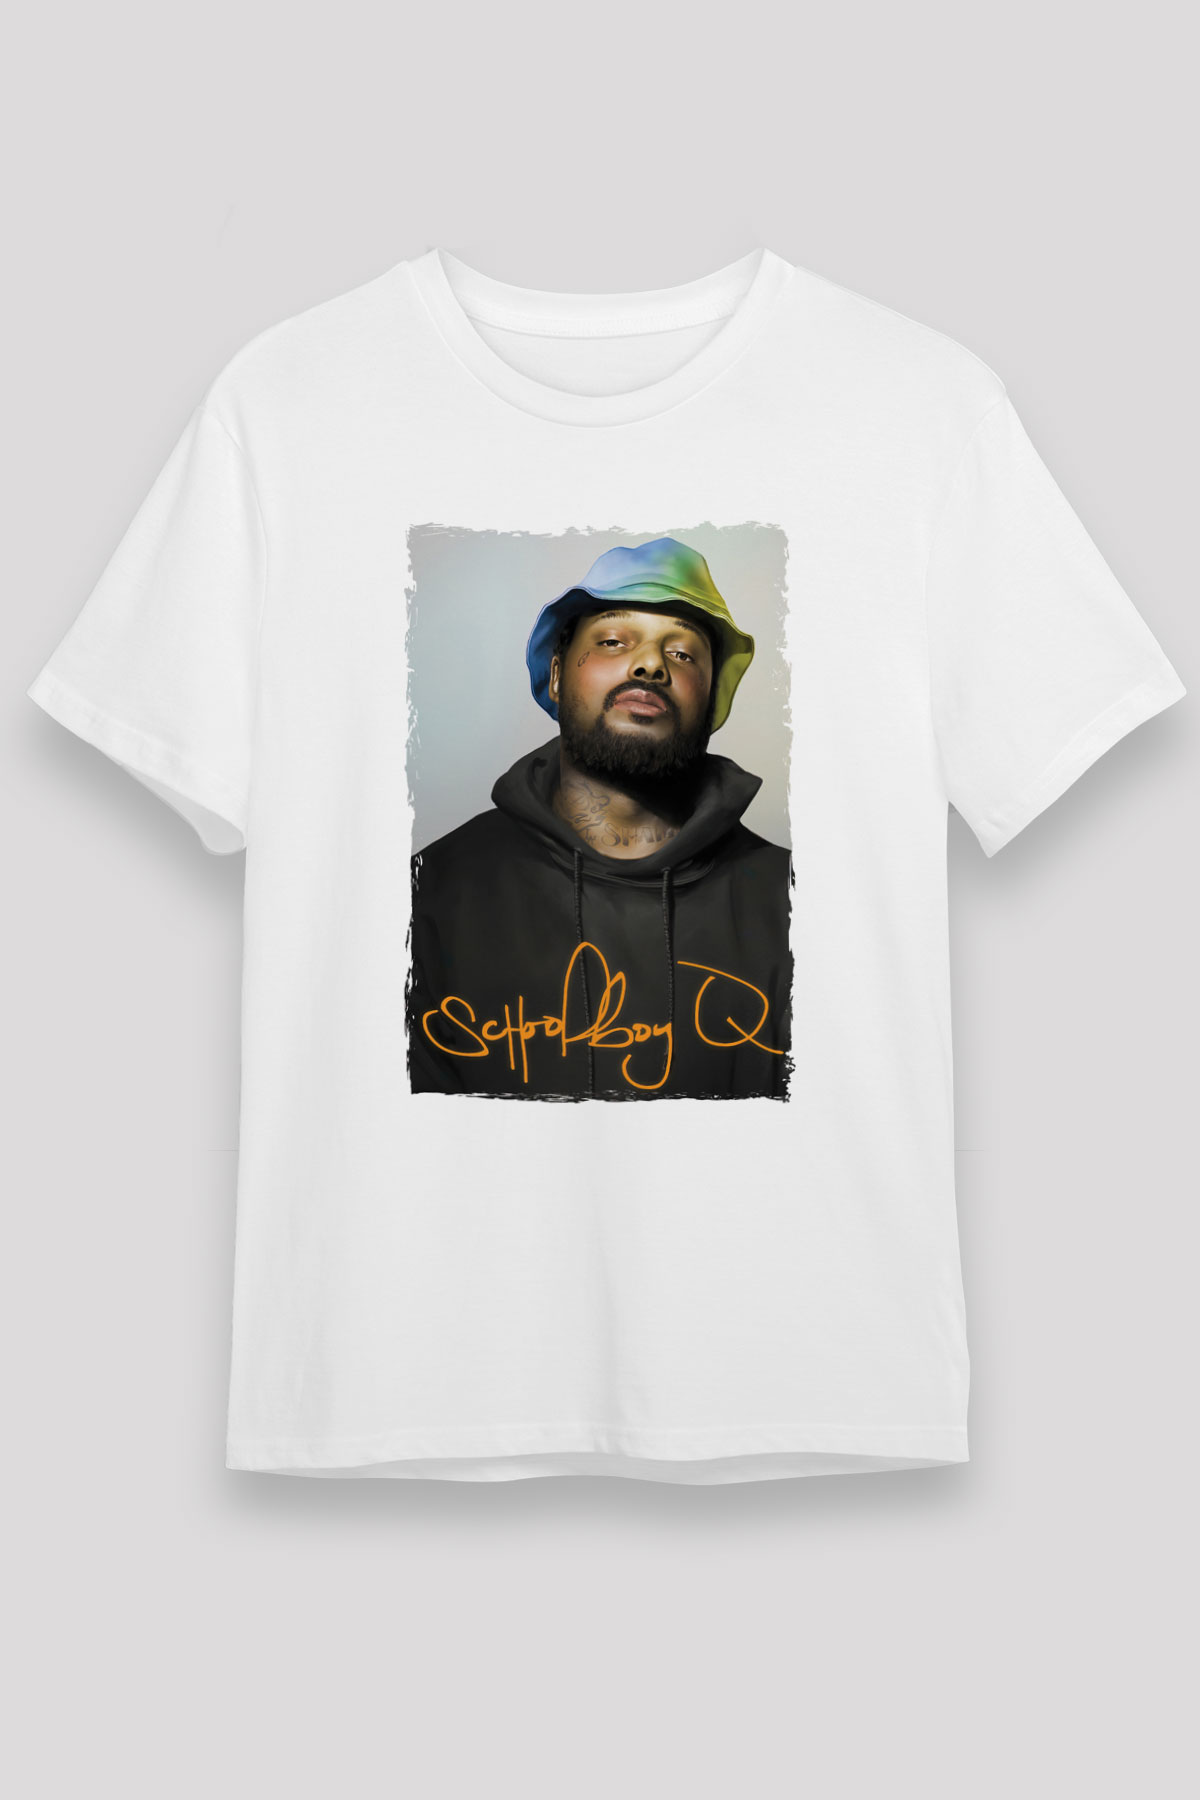 Schoolboy Q T shirt,Hip Hop,Rap Tshirt 08